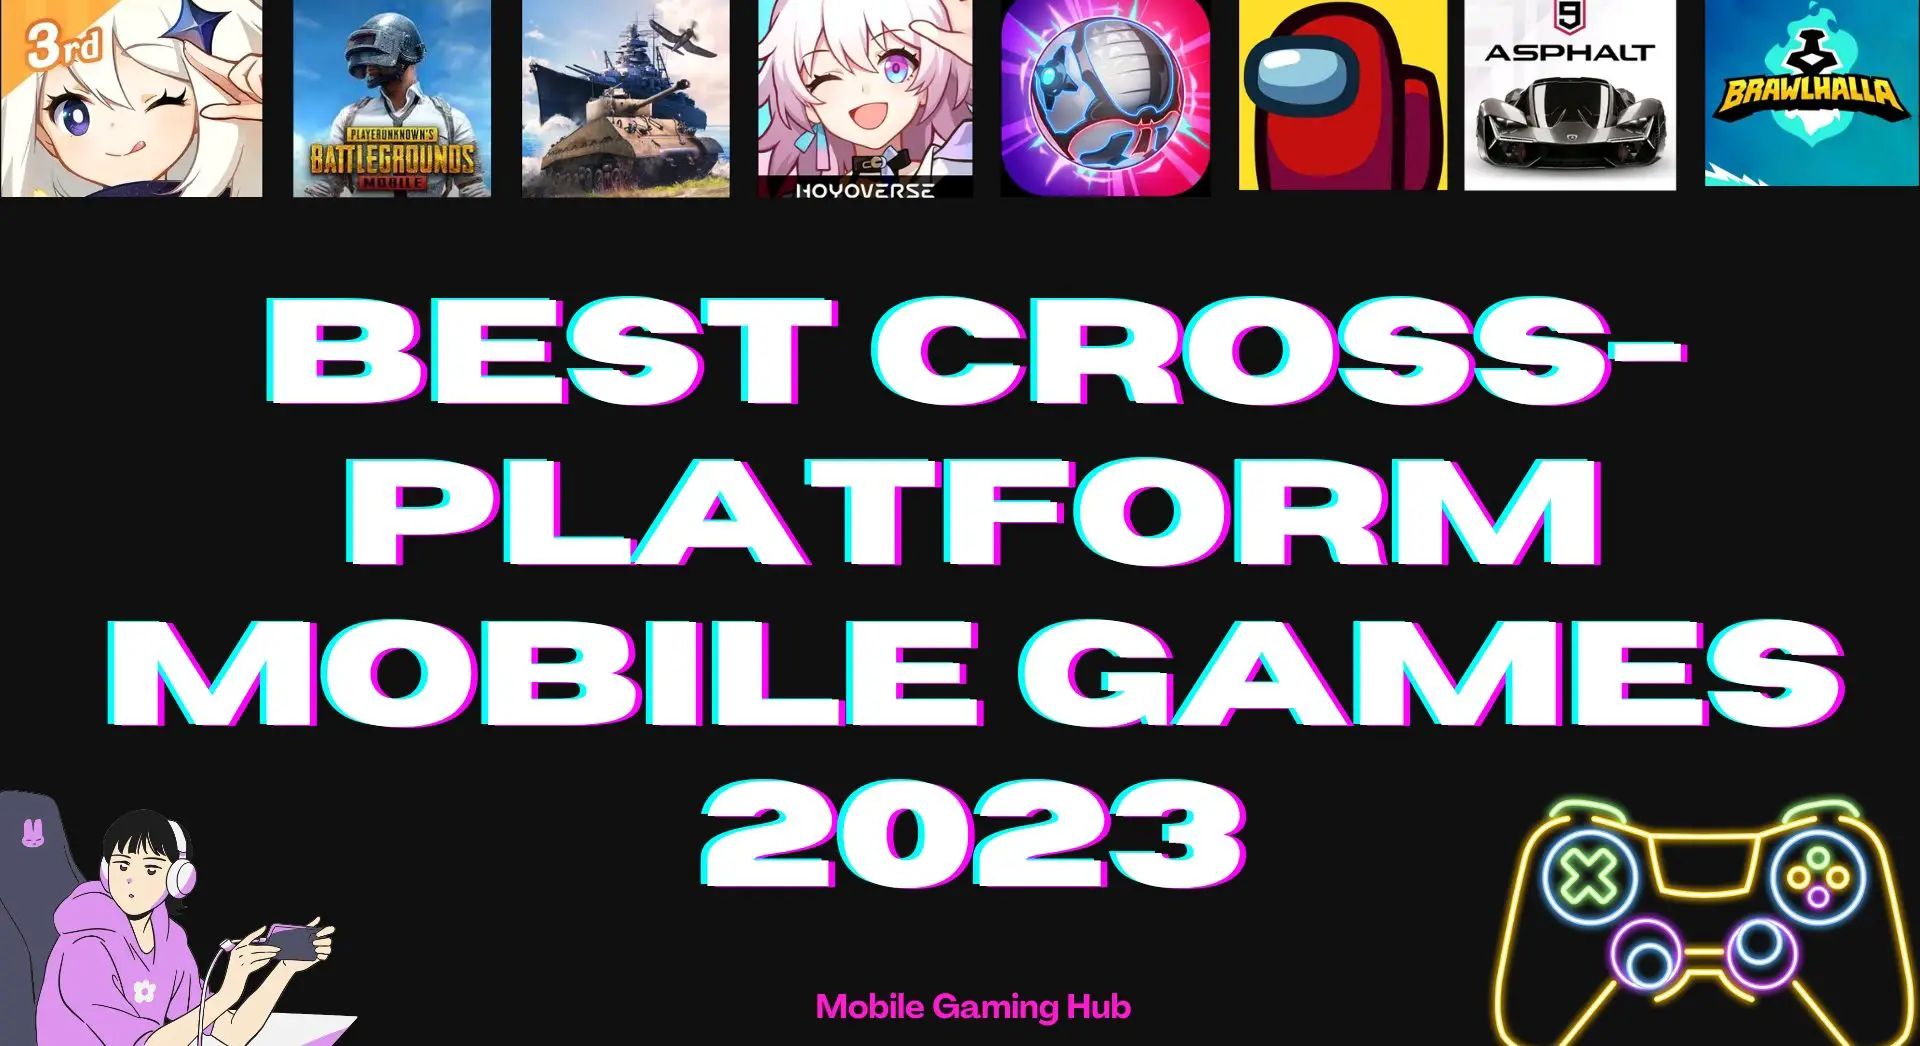 Les meilleurs jeux mobiles multiplateformes à essayer en 2023